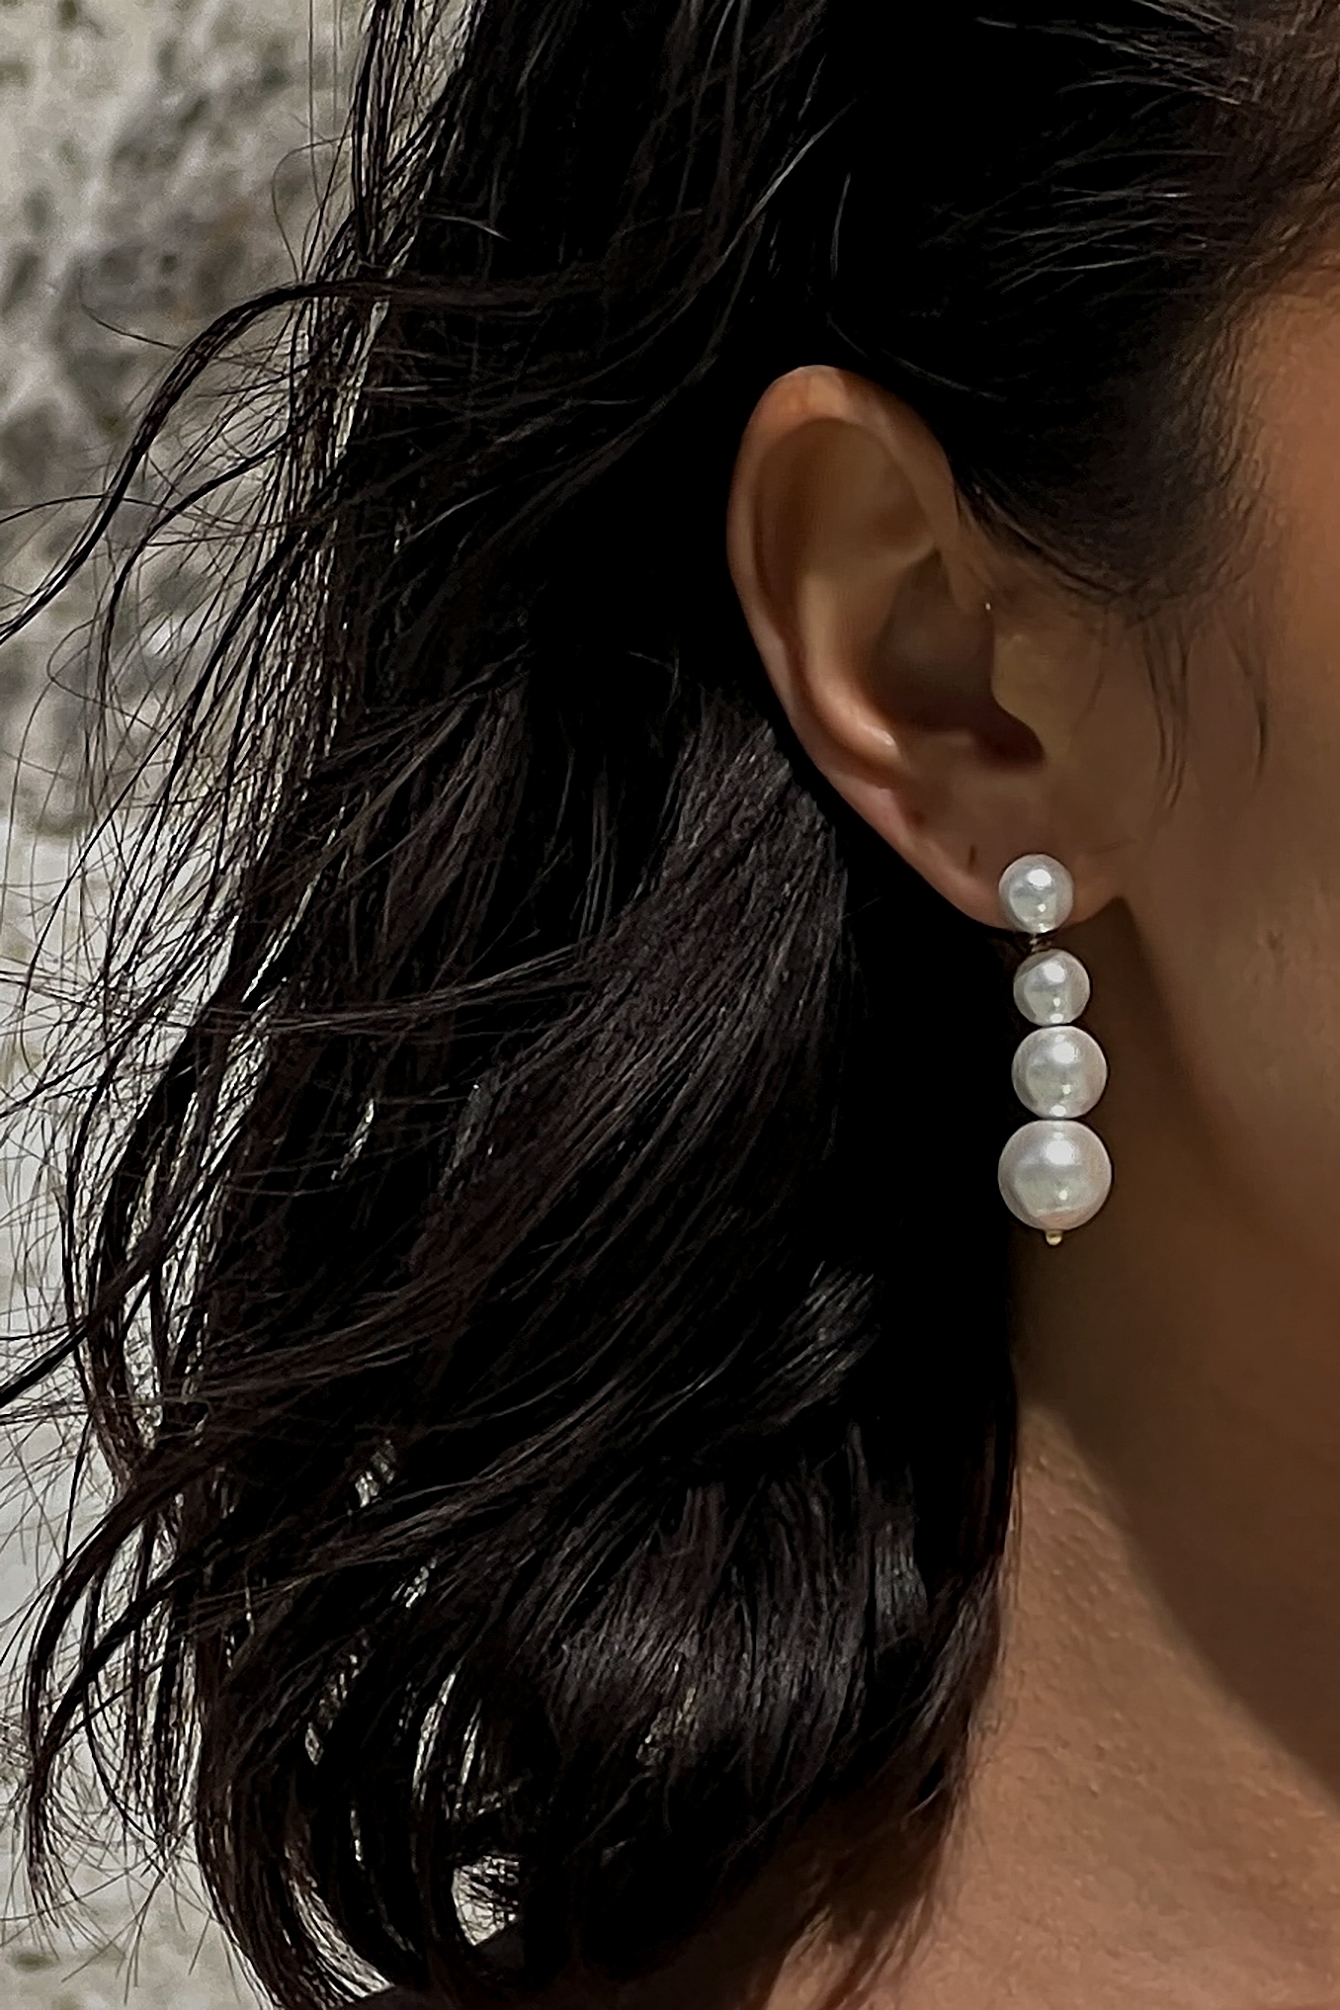 White Boucles d'oreilles en perles